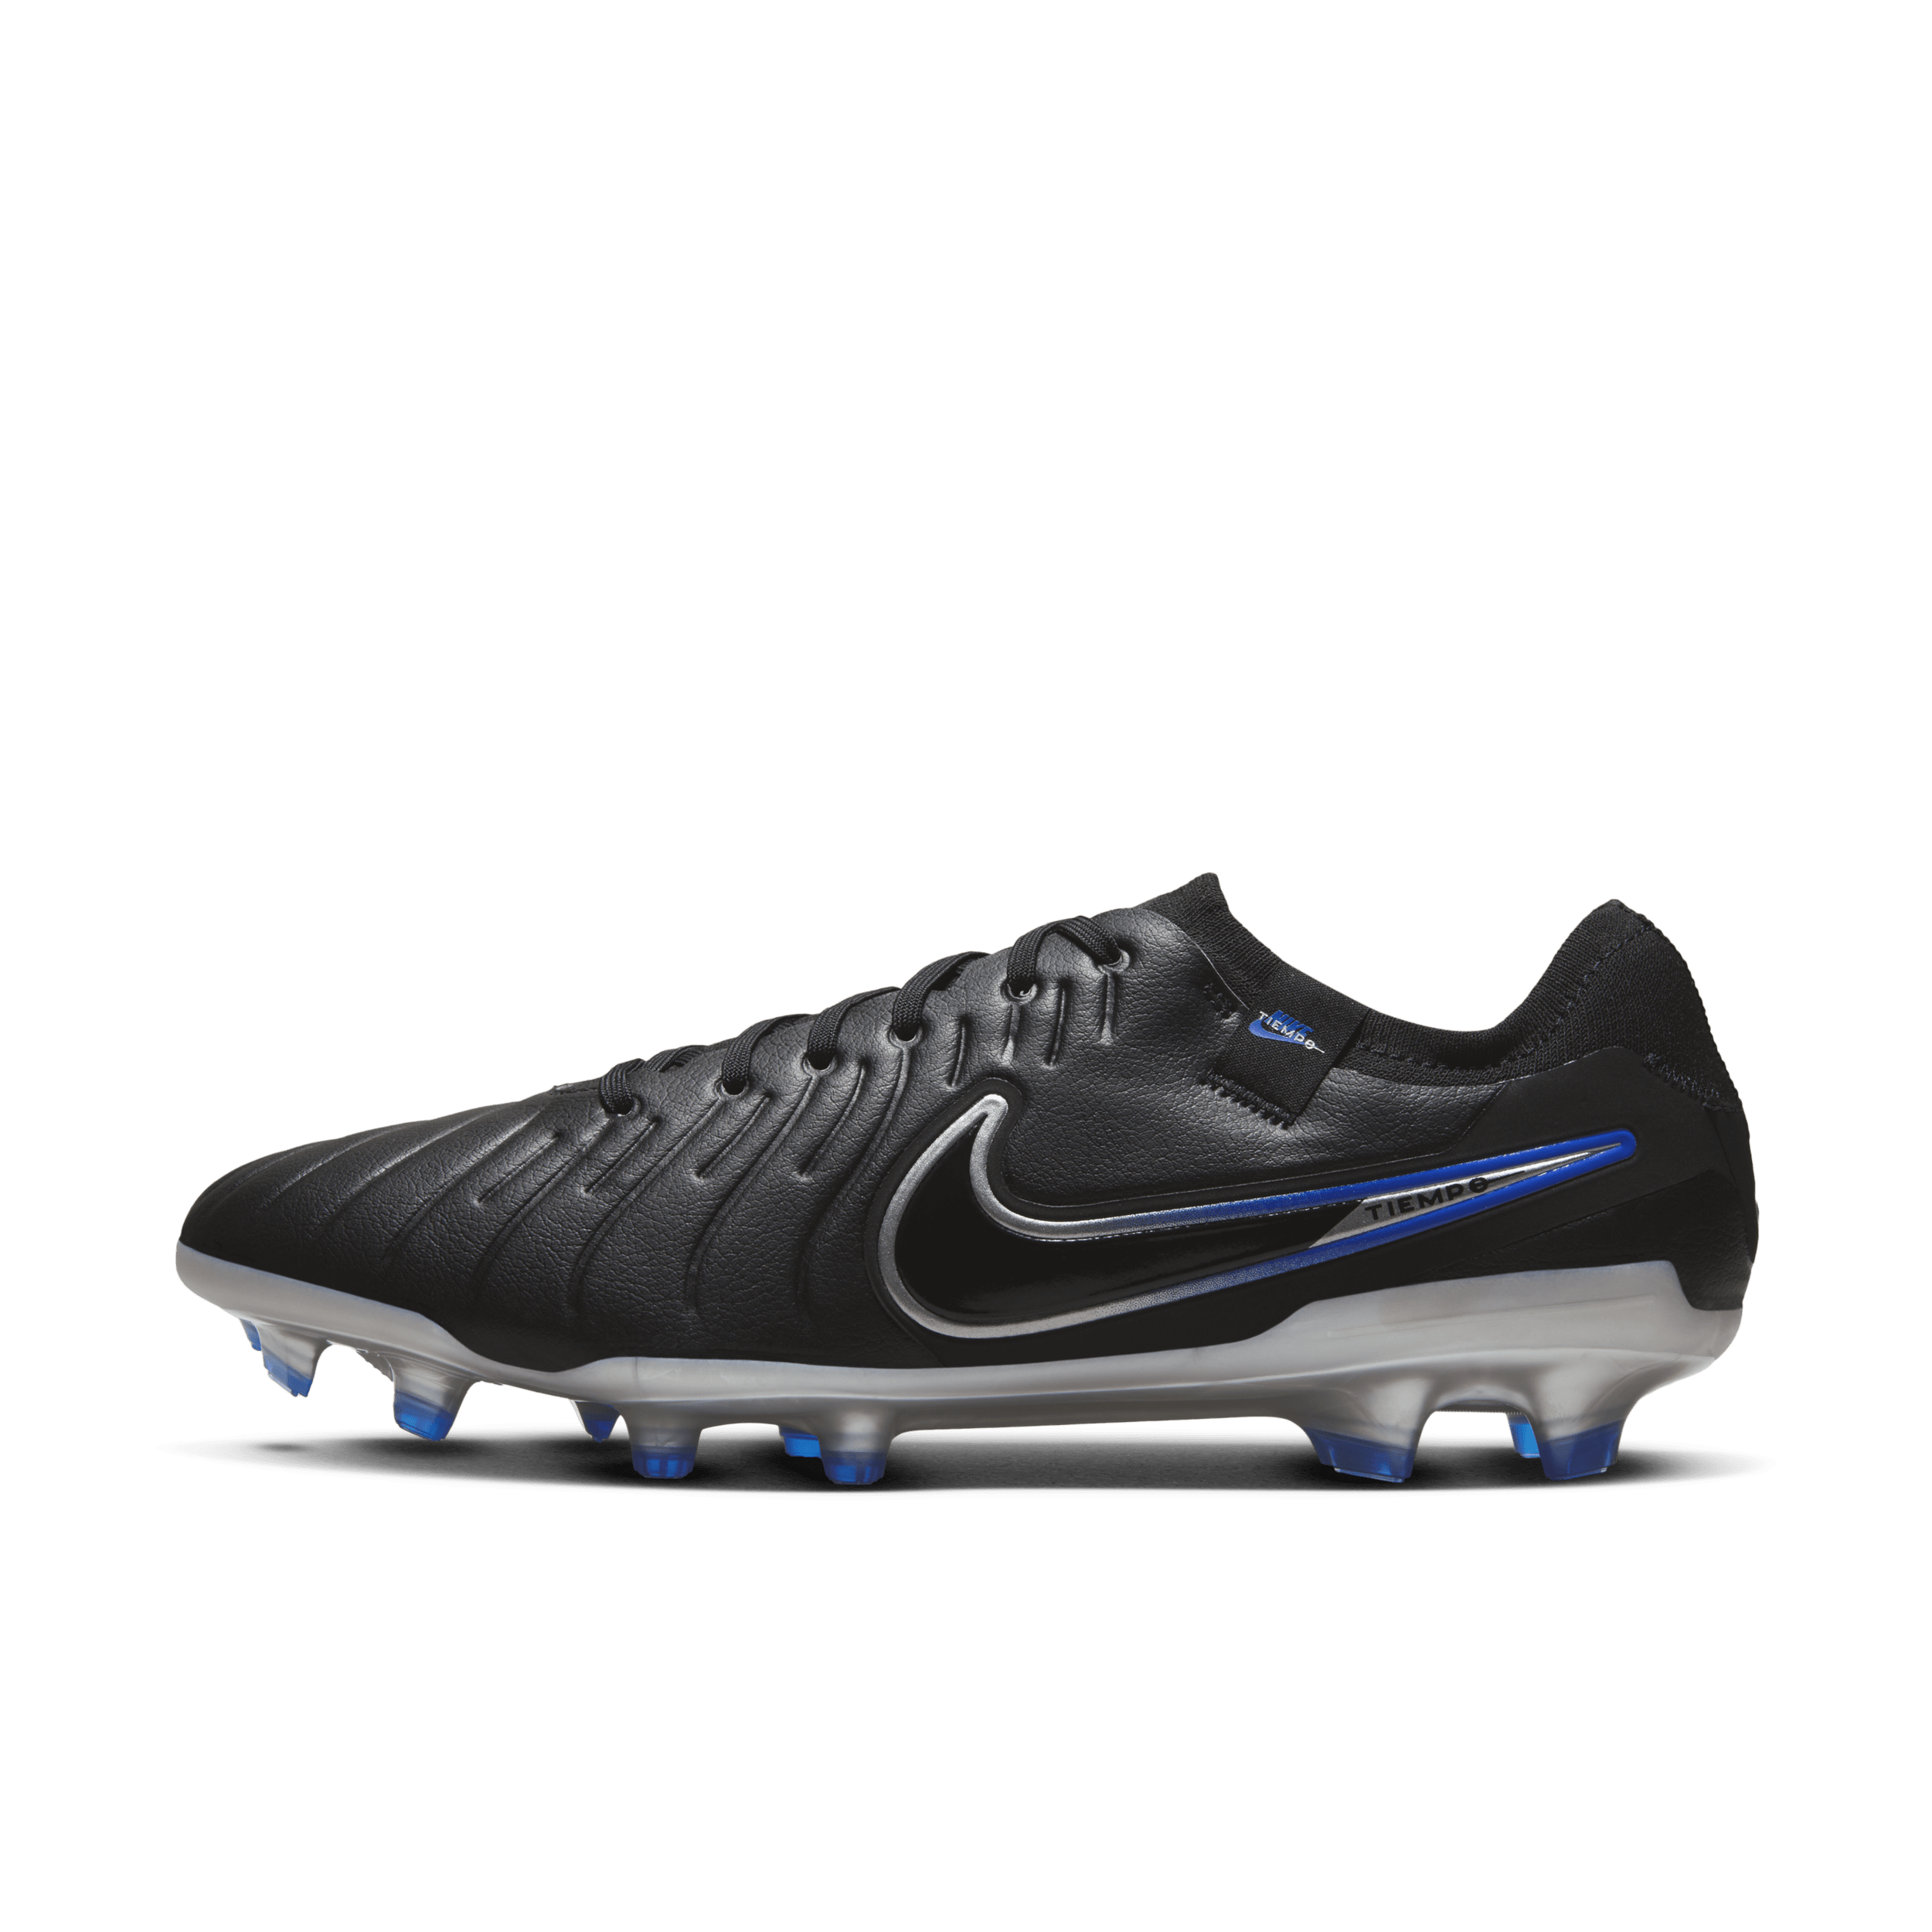 Nike Tiempo Legend 10 Pro low top voetbalschoenen (stevige ondergrond) - Zwart